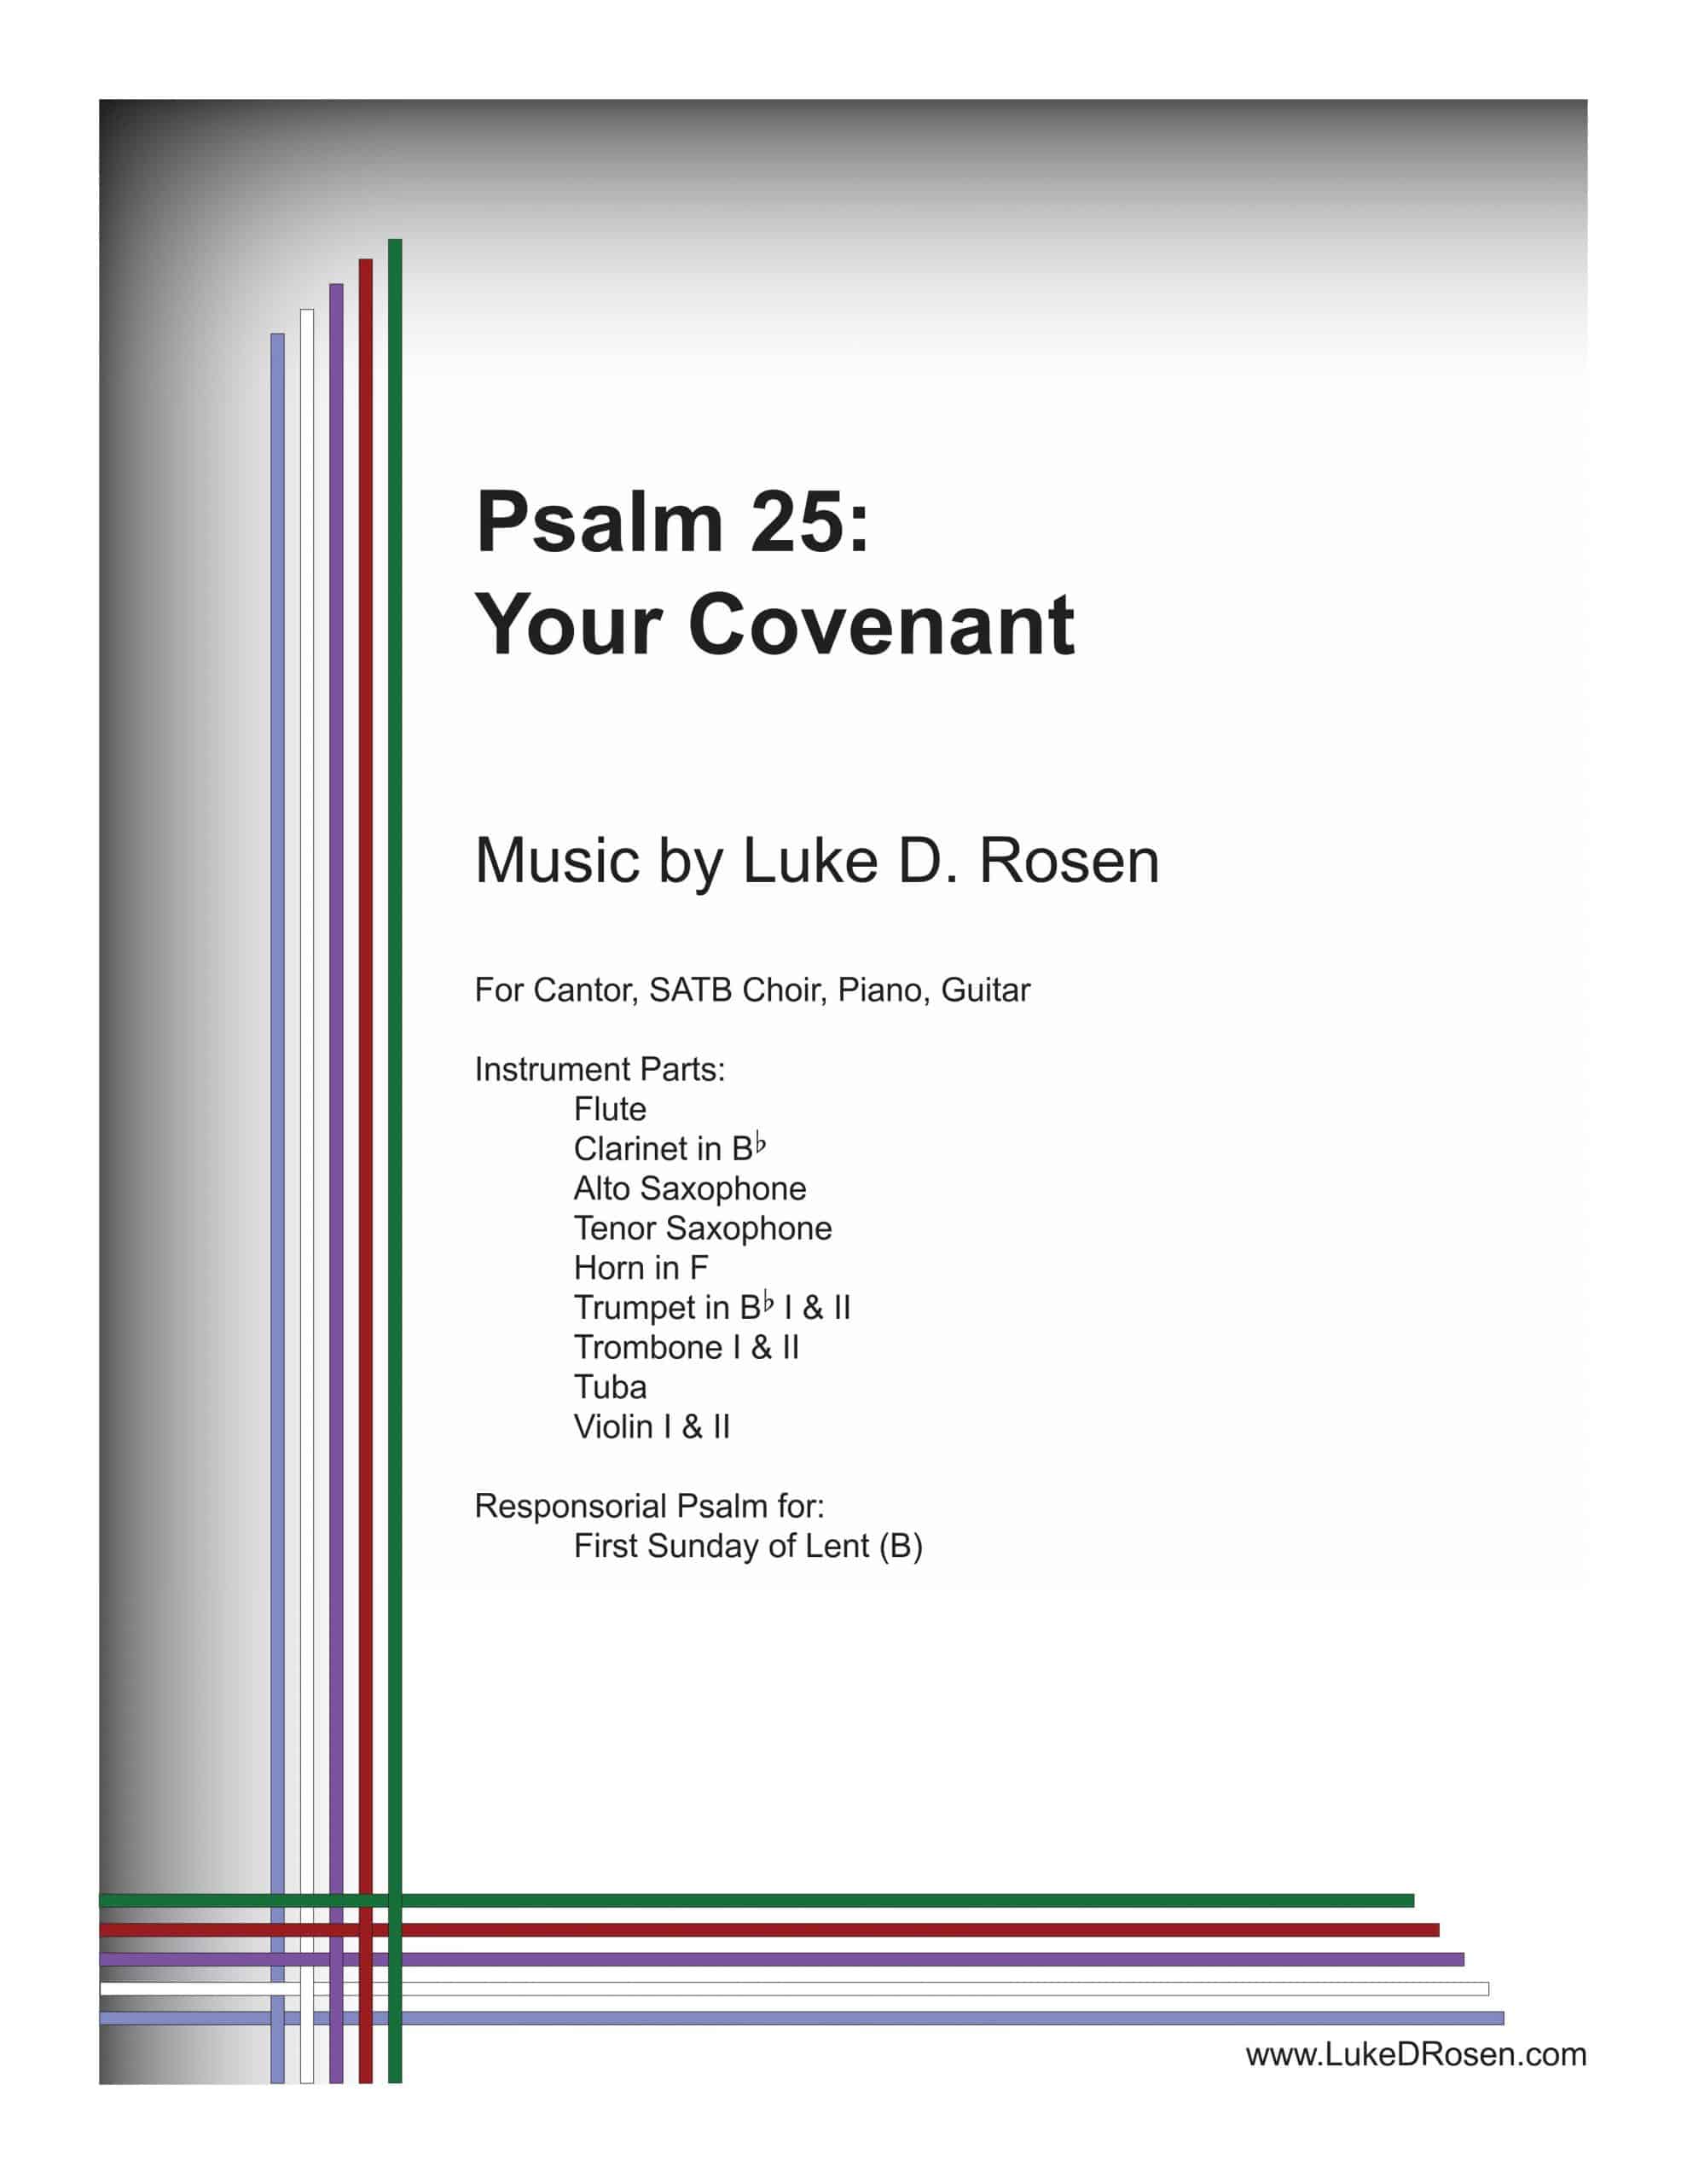 Psalm 25 – Your Covenant (Rosen)